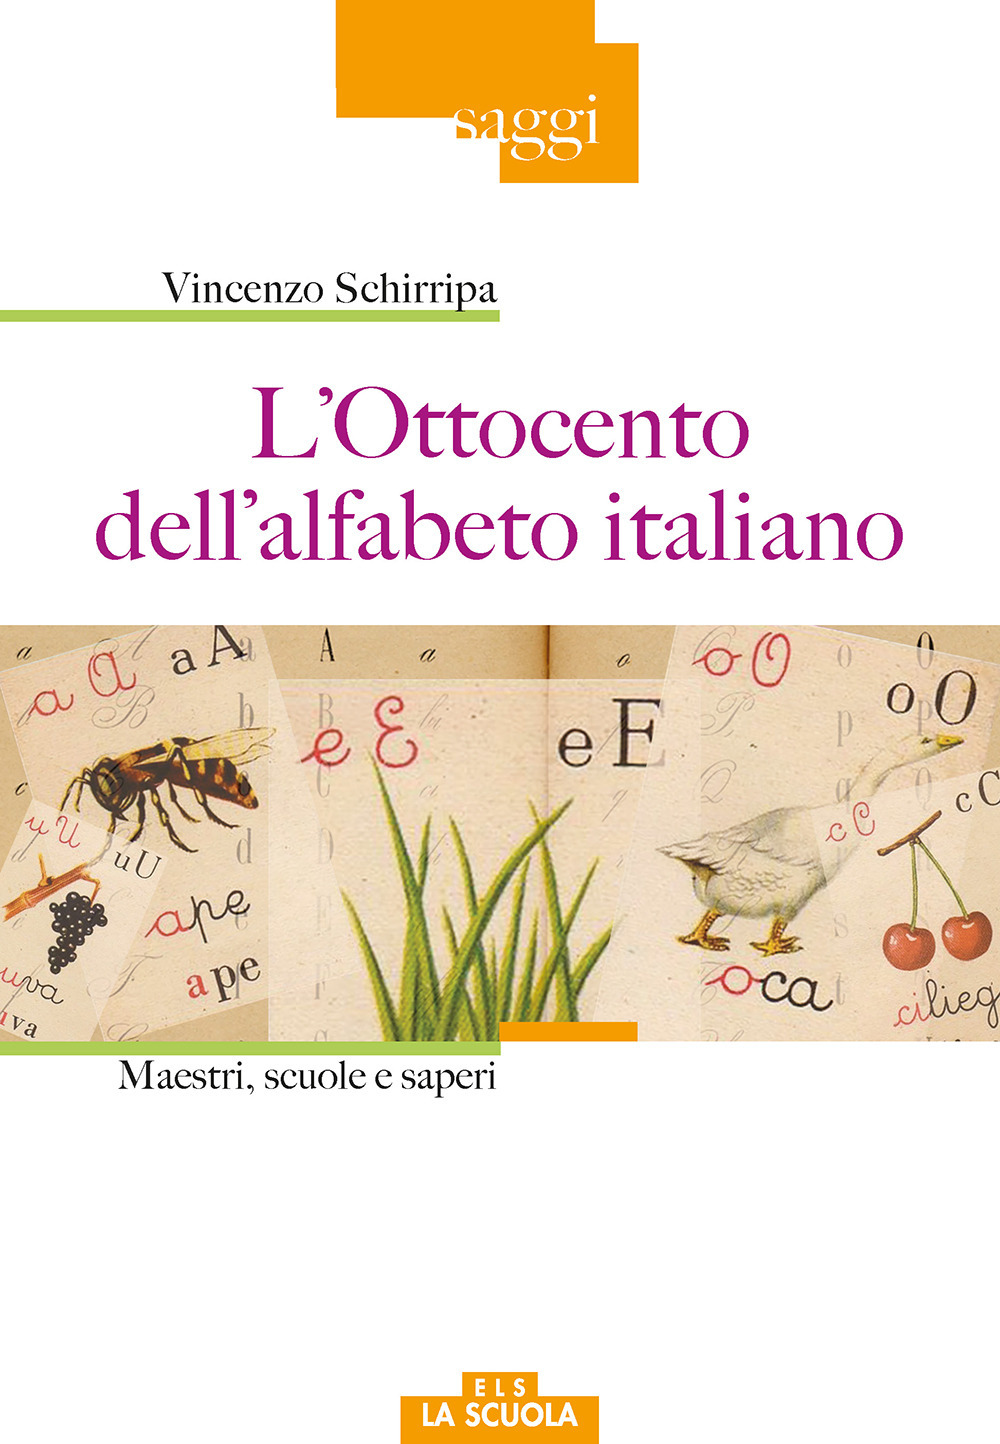 Image of L' Ottocento dell'alfabeto italiano. Maestri, scuole e saperi